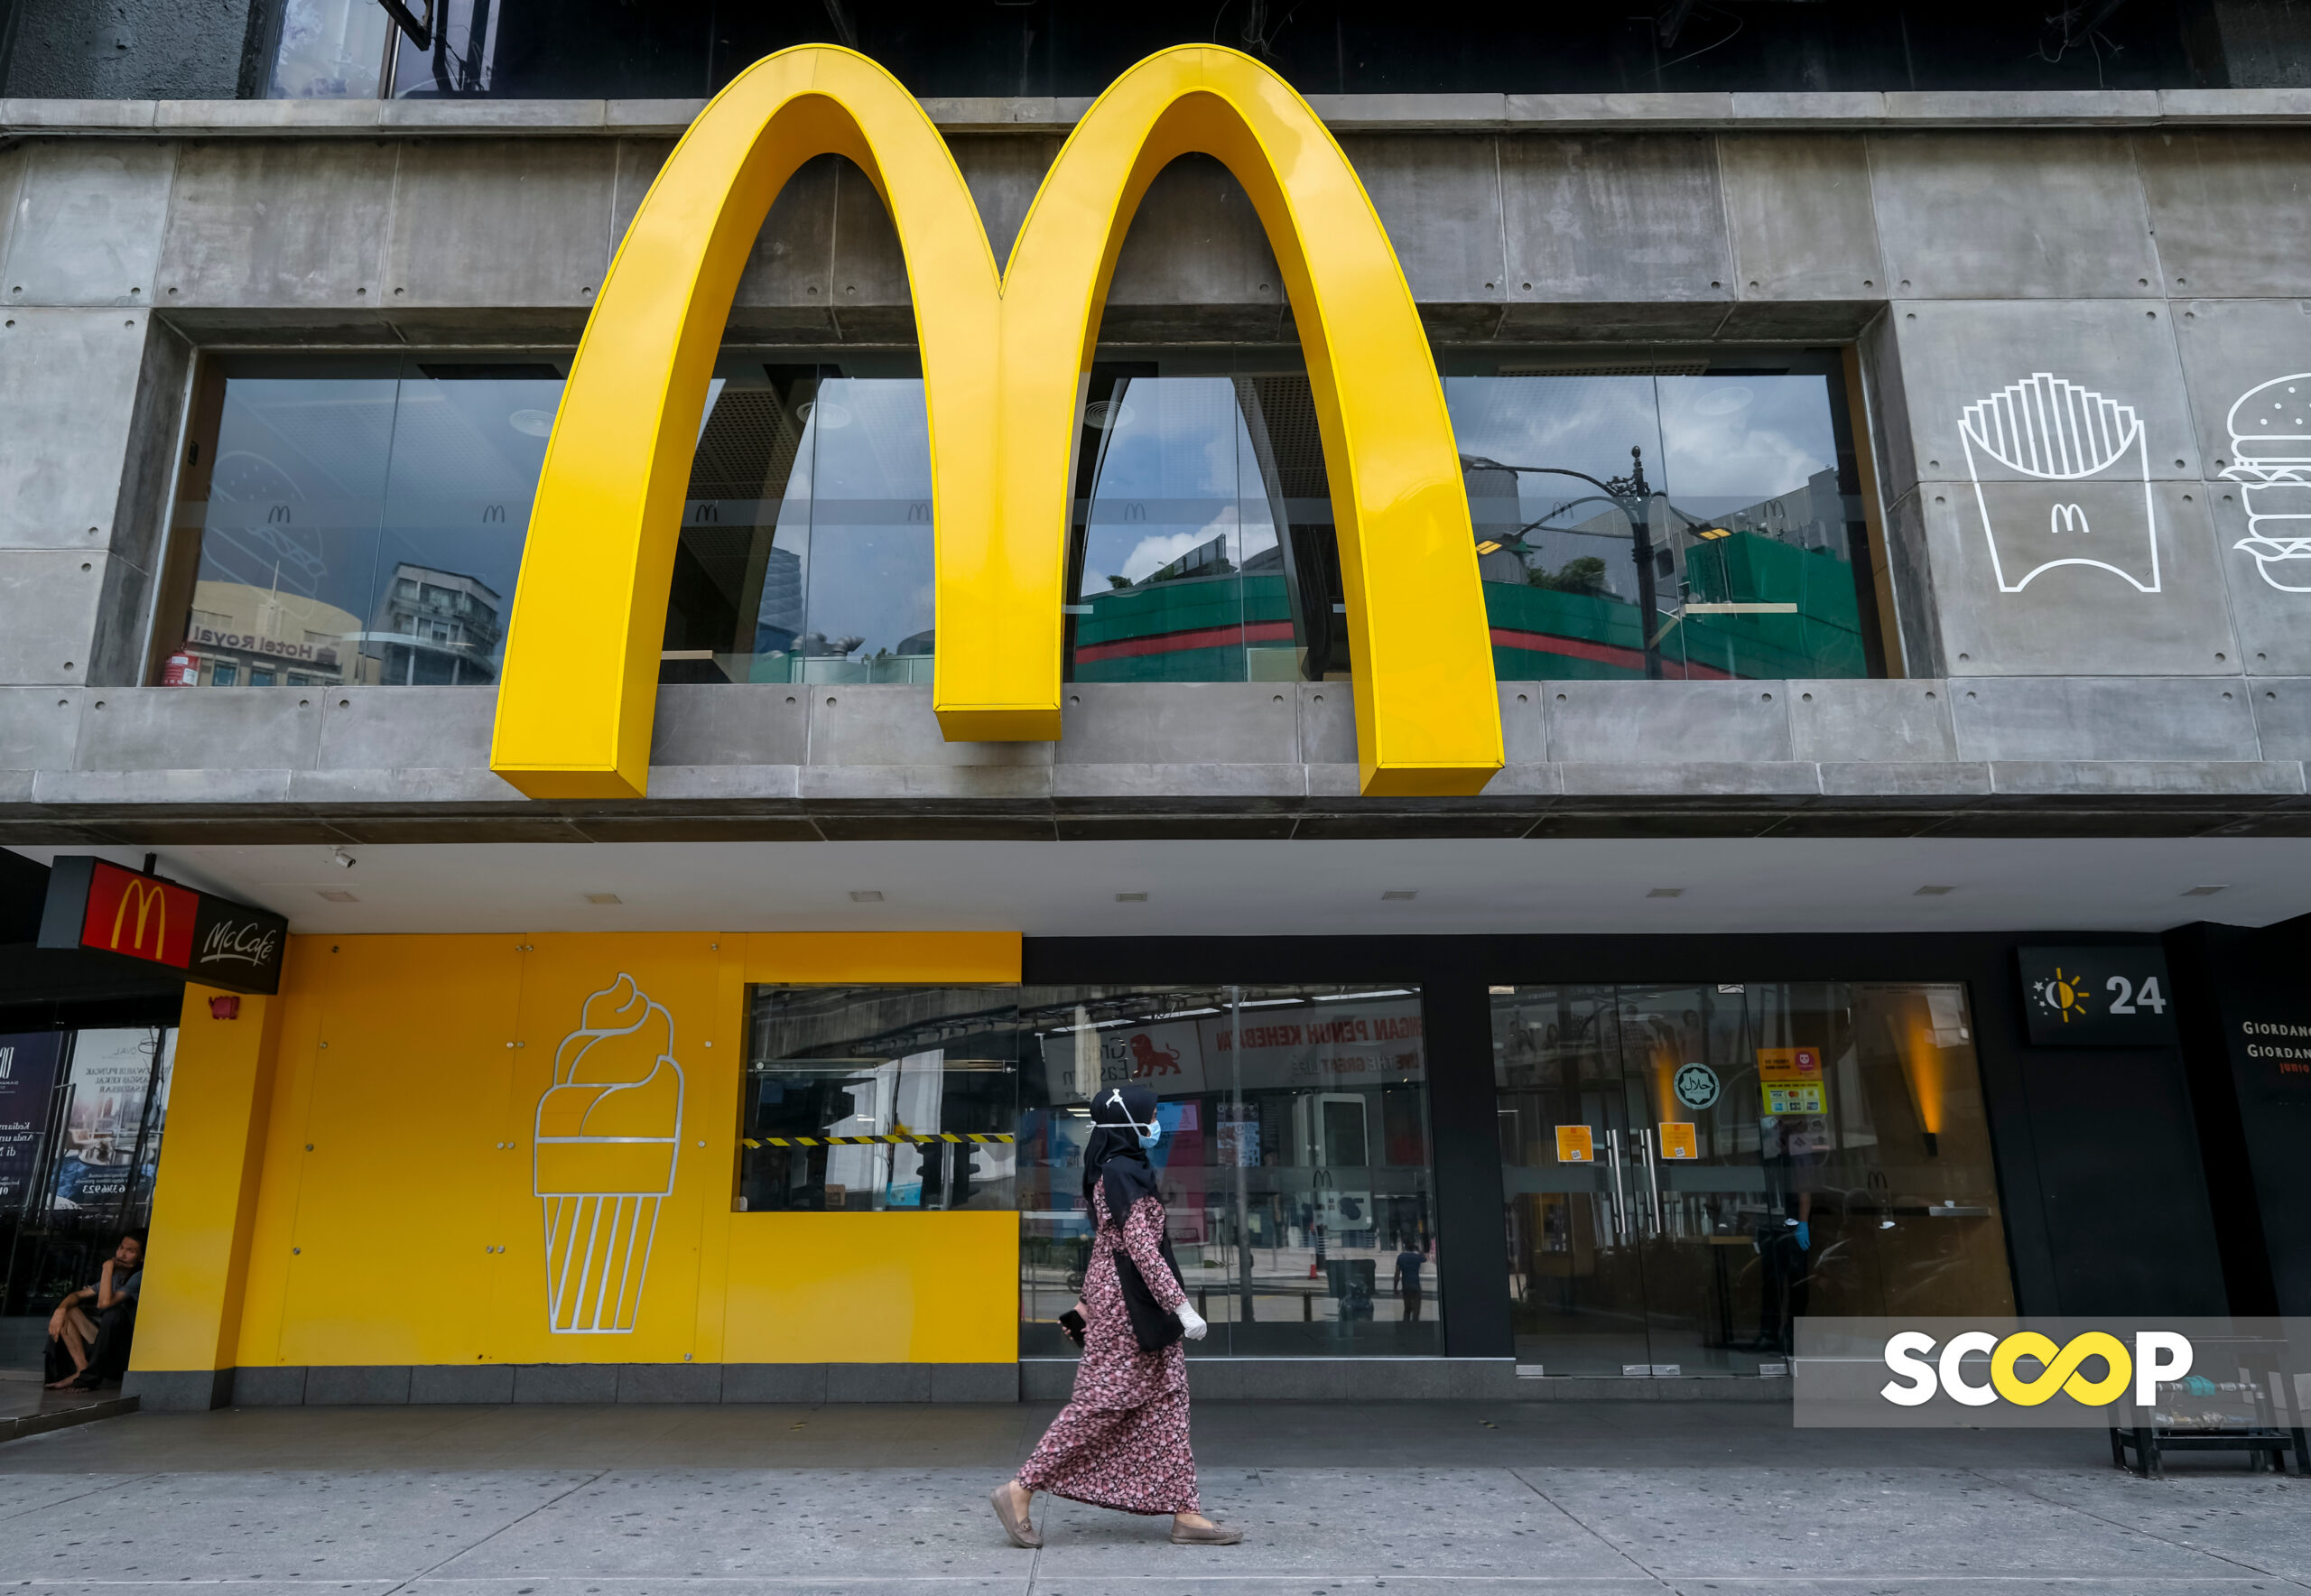 Terjejas angkara boikot, McDonald’s beli syarikat miliki 225 restoran di Israel